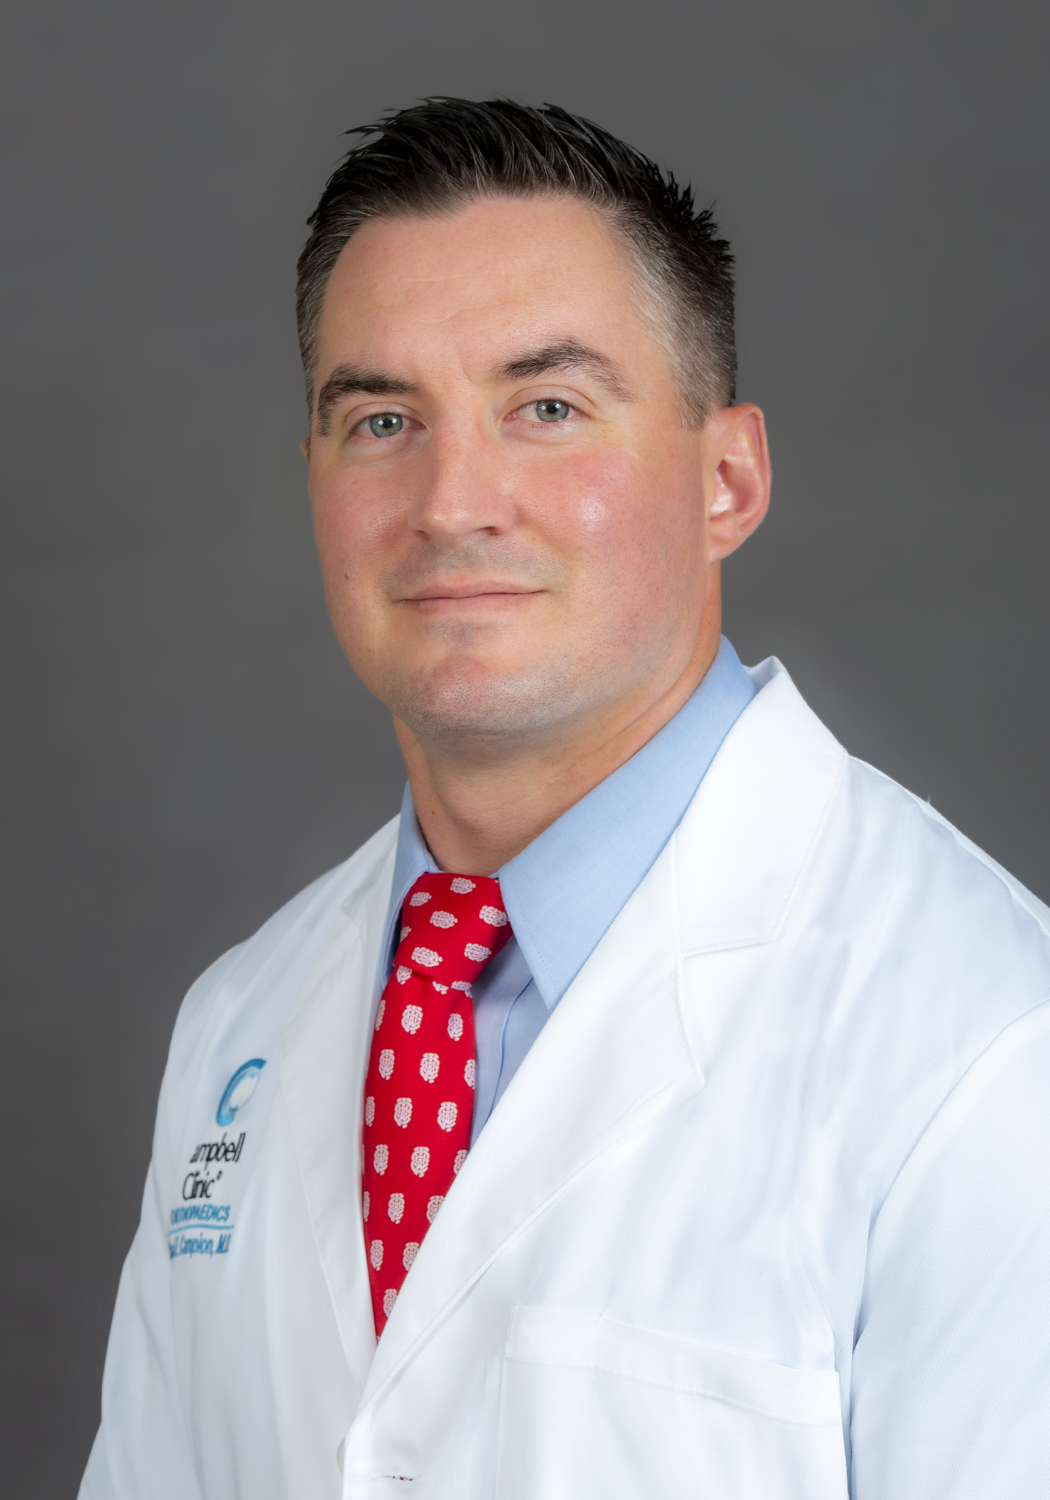 Dr. Chad E. Campion